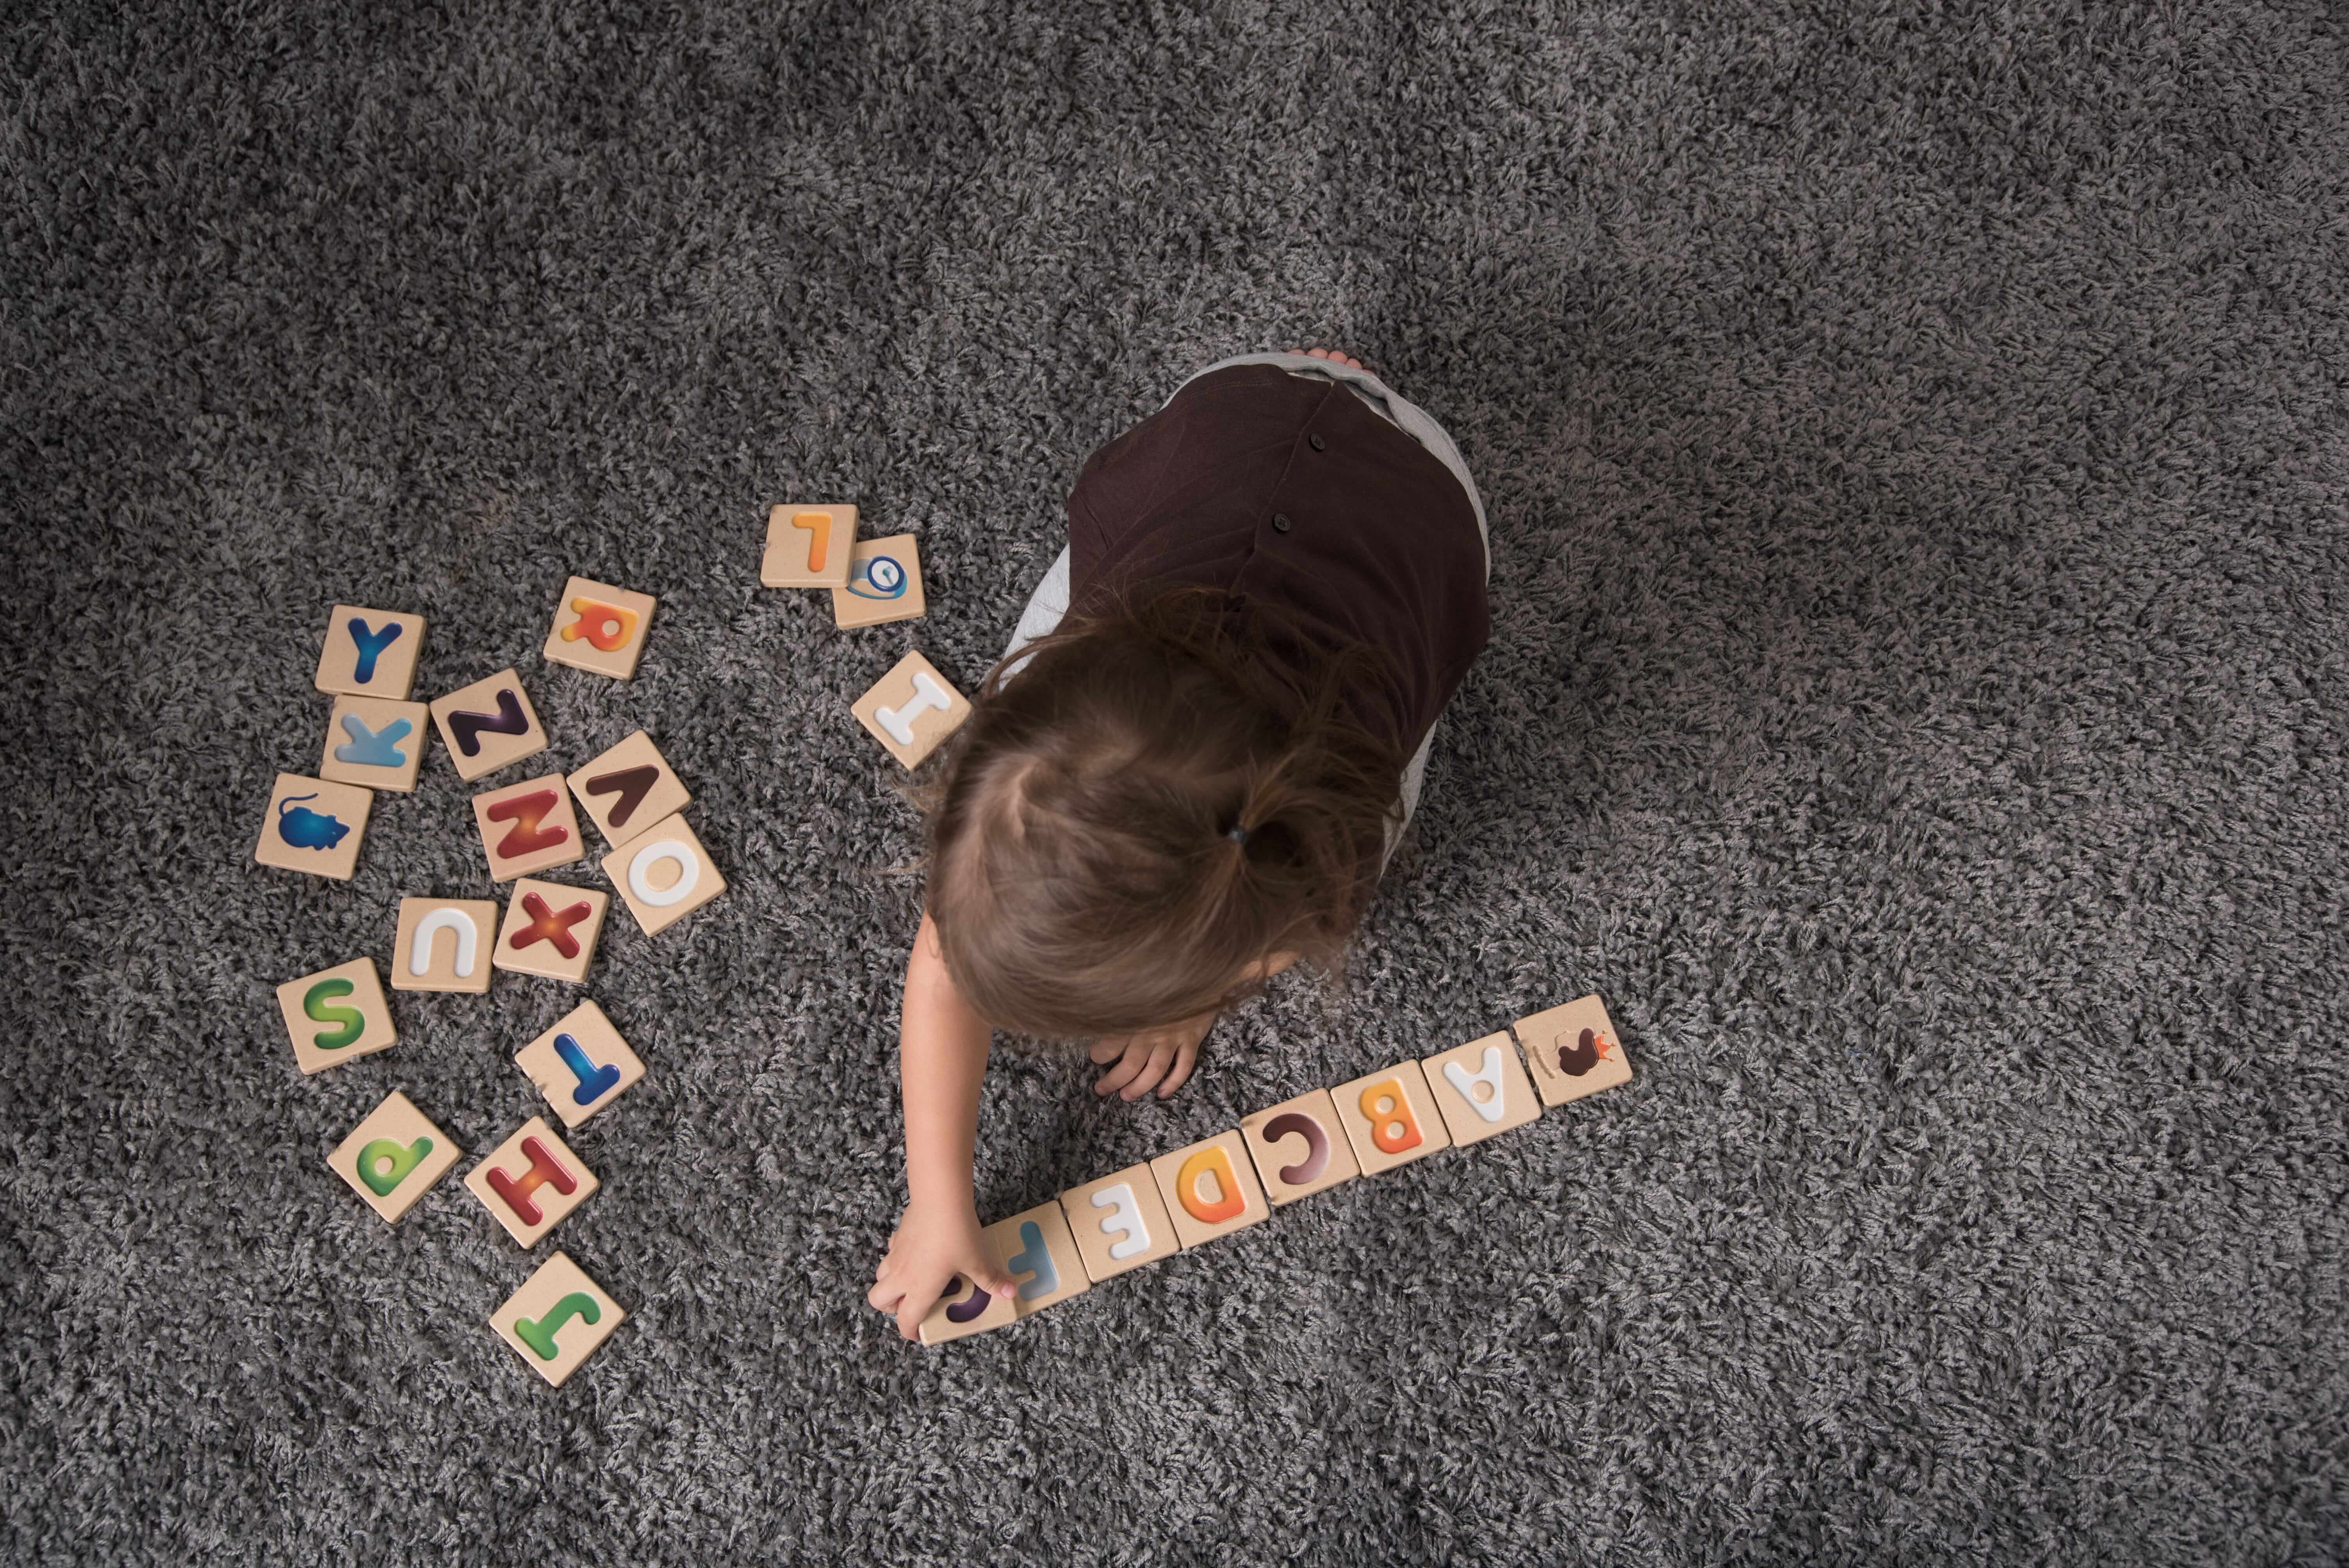 Imparare giocando: i giochi educativi per home schooling